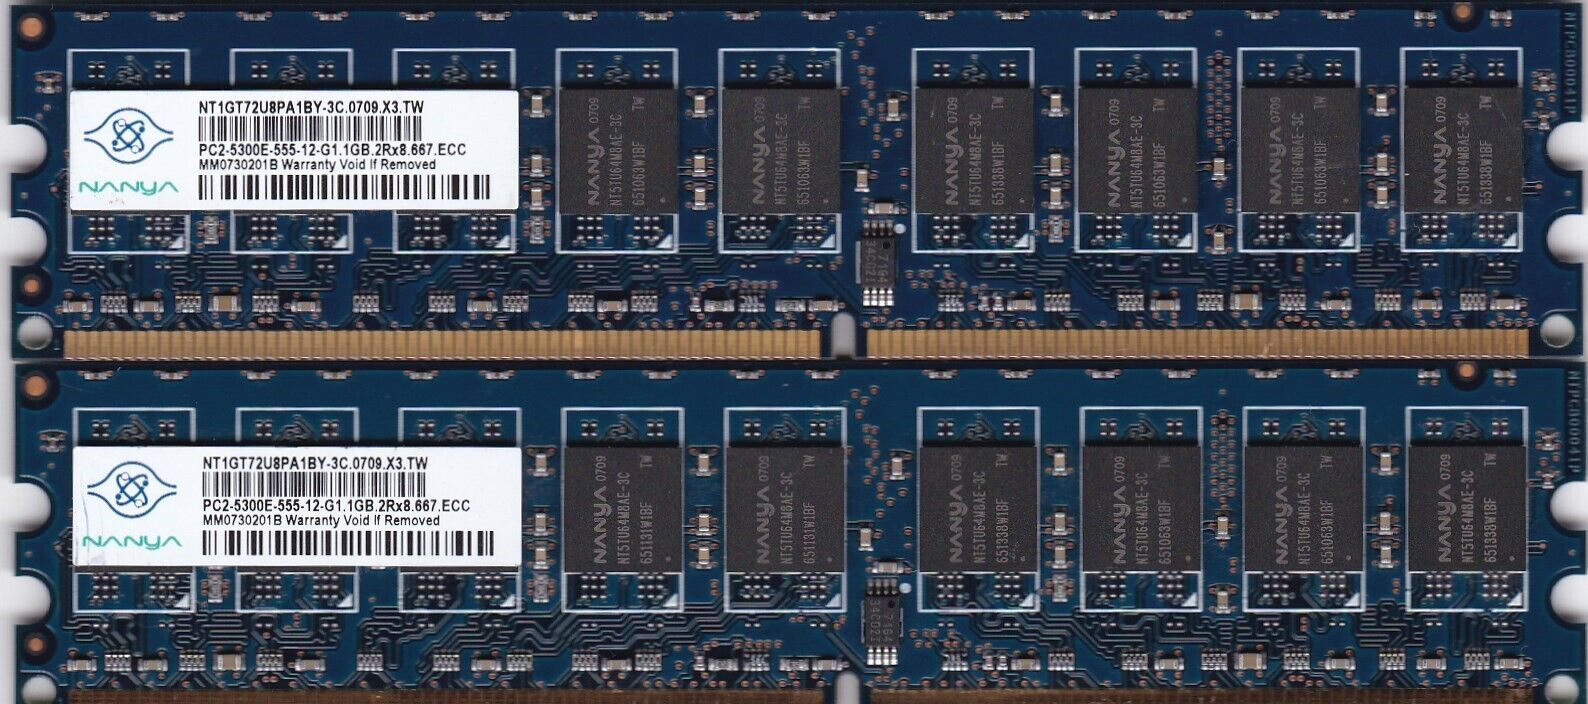 2GB 2x1GB PC2-5300E DDR2-667 NANYA NT1GT72U8PA1BY-3C BLUE ECC Ram Memory Kit